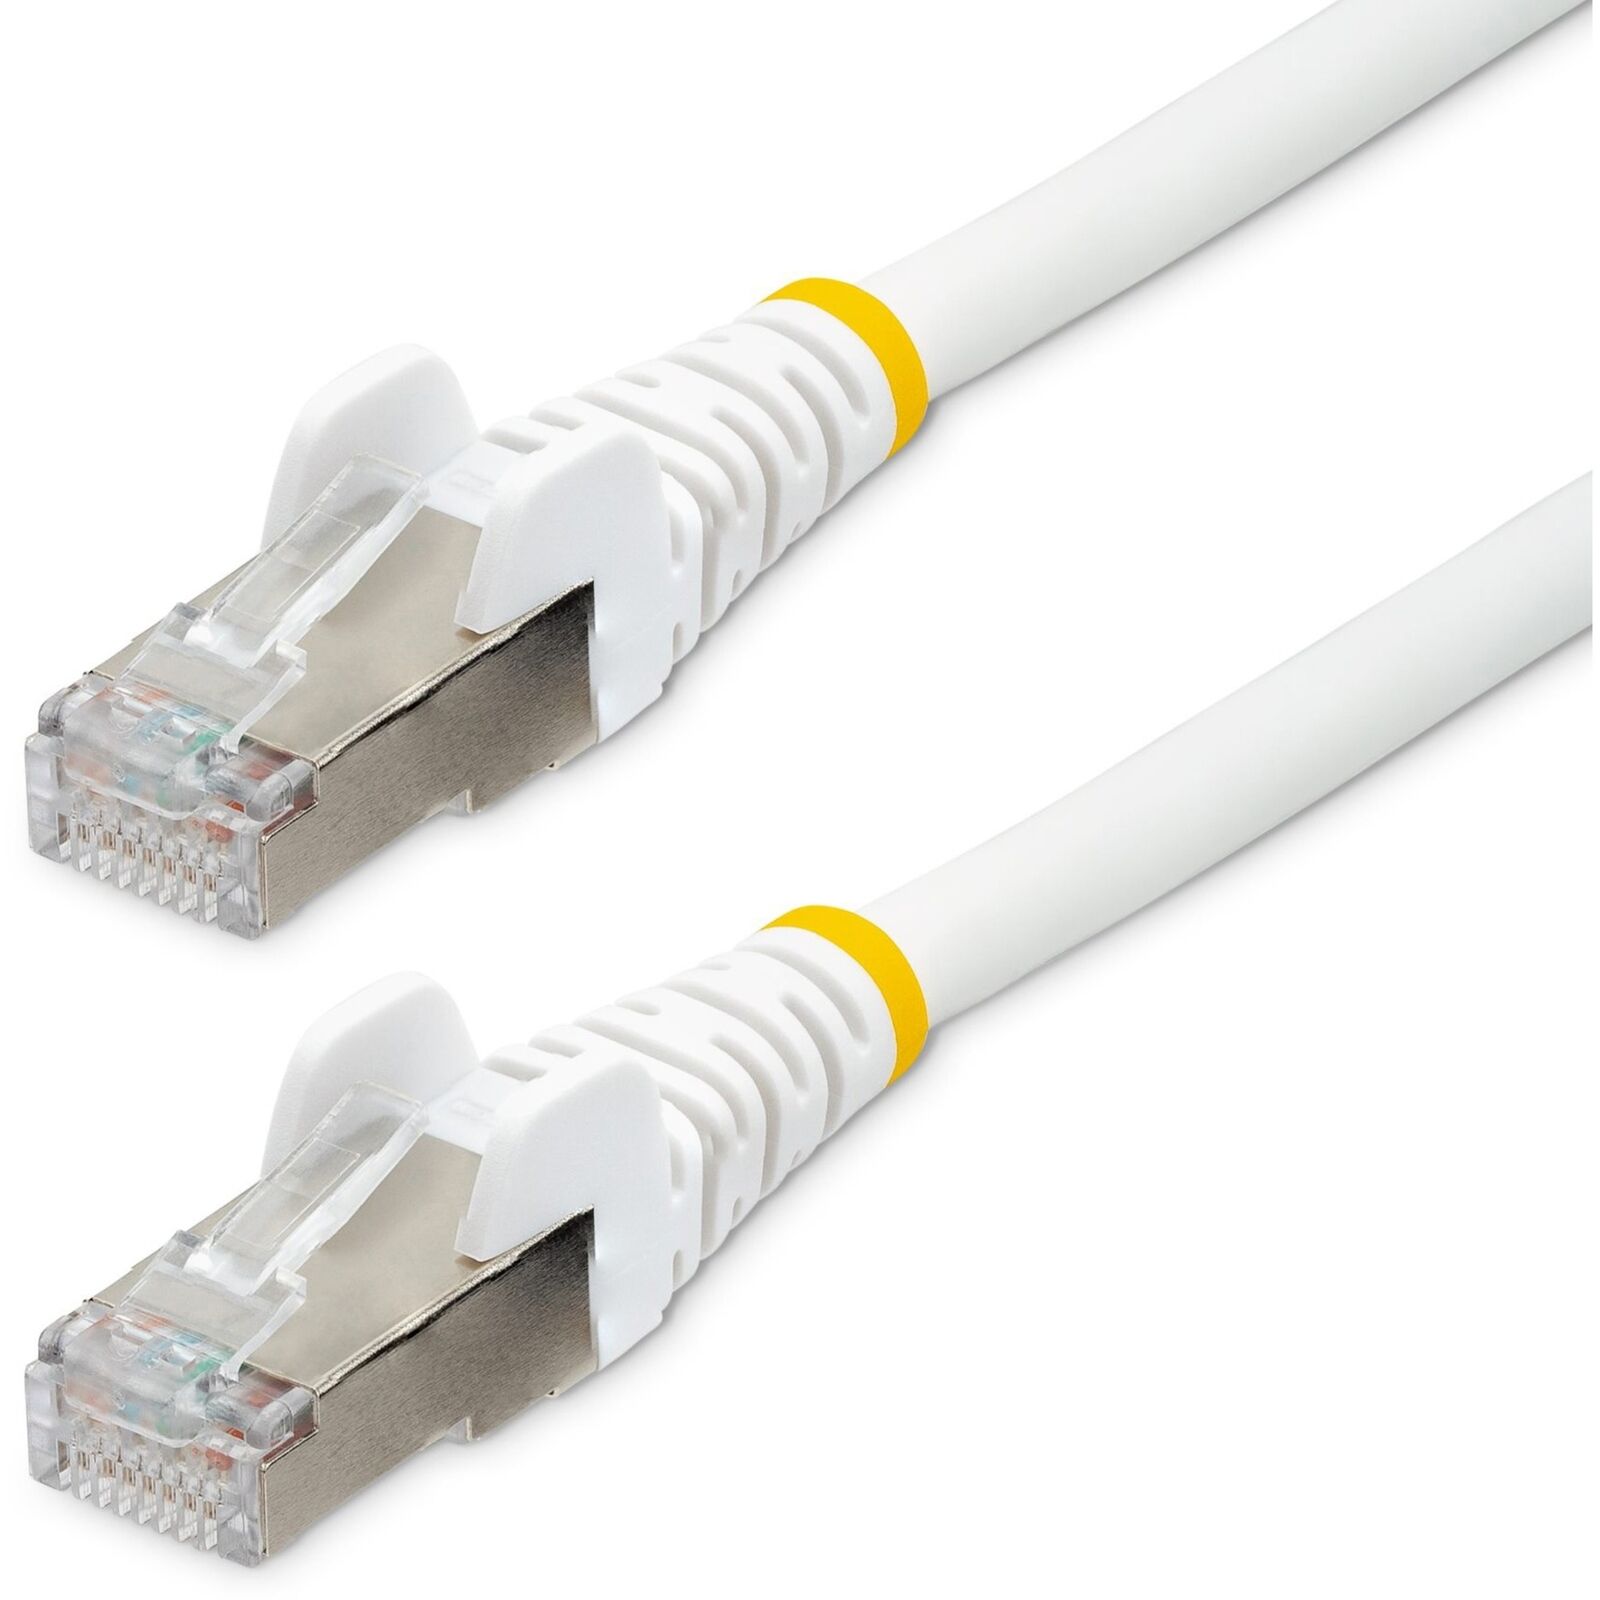 StarTech.com 25ft CAT6a Ethernet Cable, White Low Smoke Zero Halogen [LSZH] 10